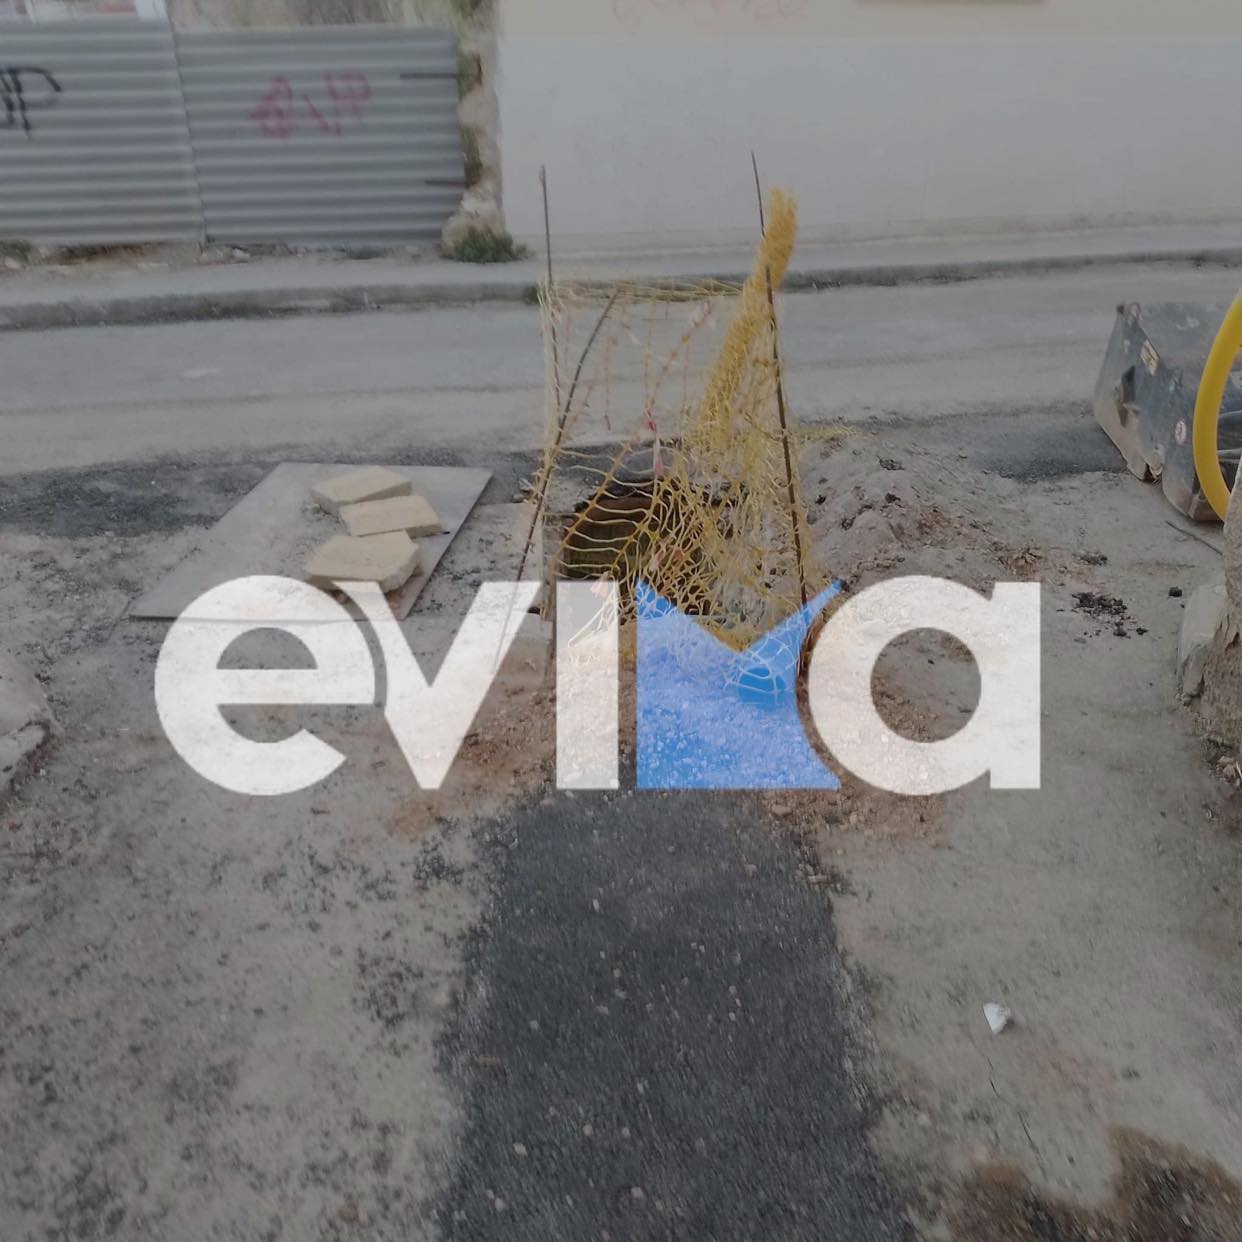 Χαλκίδα: Εικόνες απελπισίας μετά τα έργα ΔΕΠΑ σε δρόμους της πόλης – Σε απόγνωση οι κάτοικοι